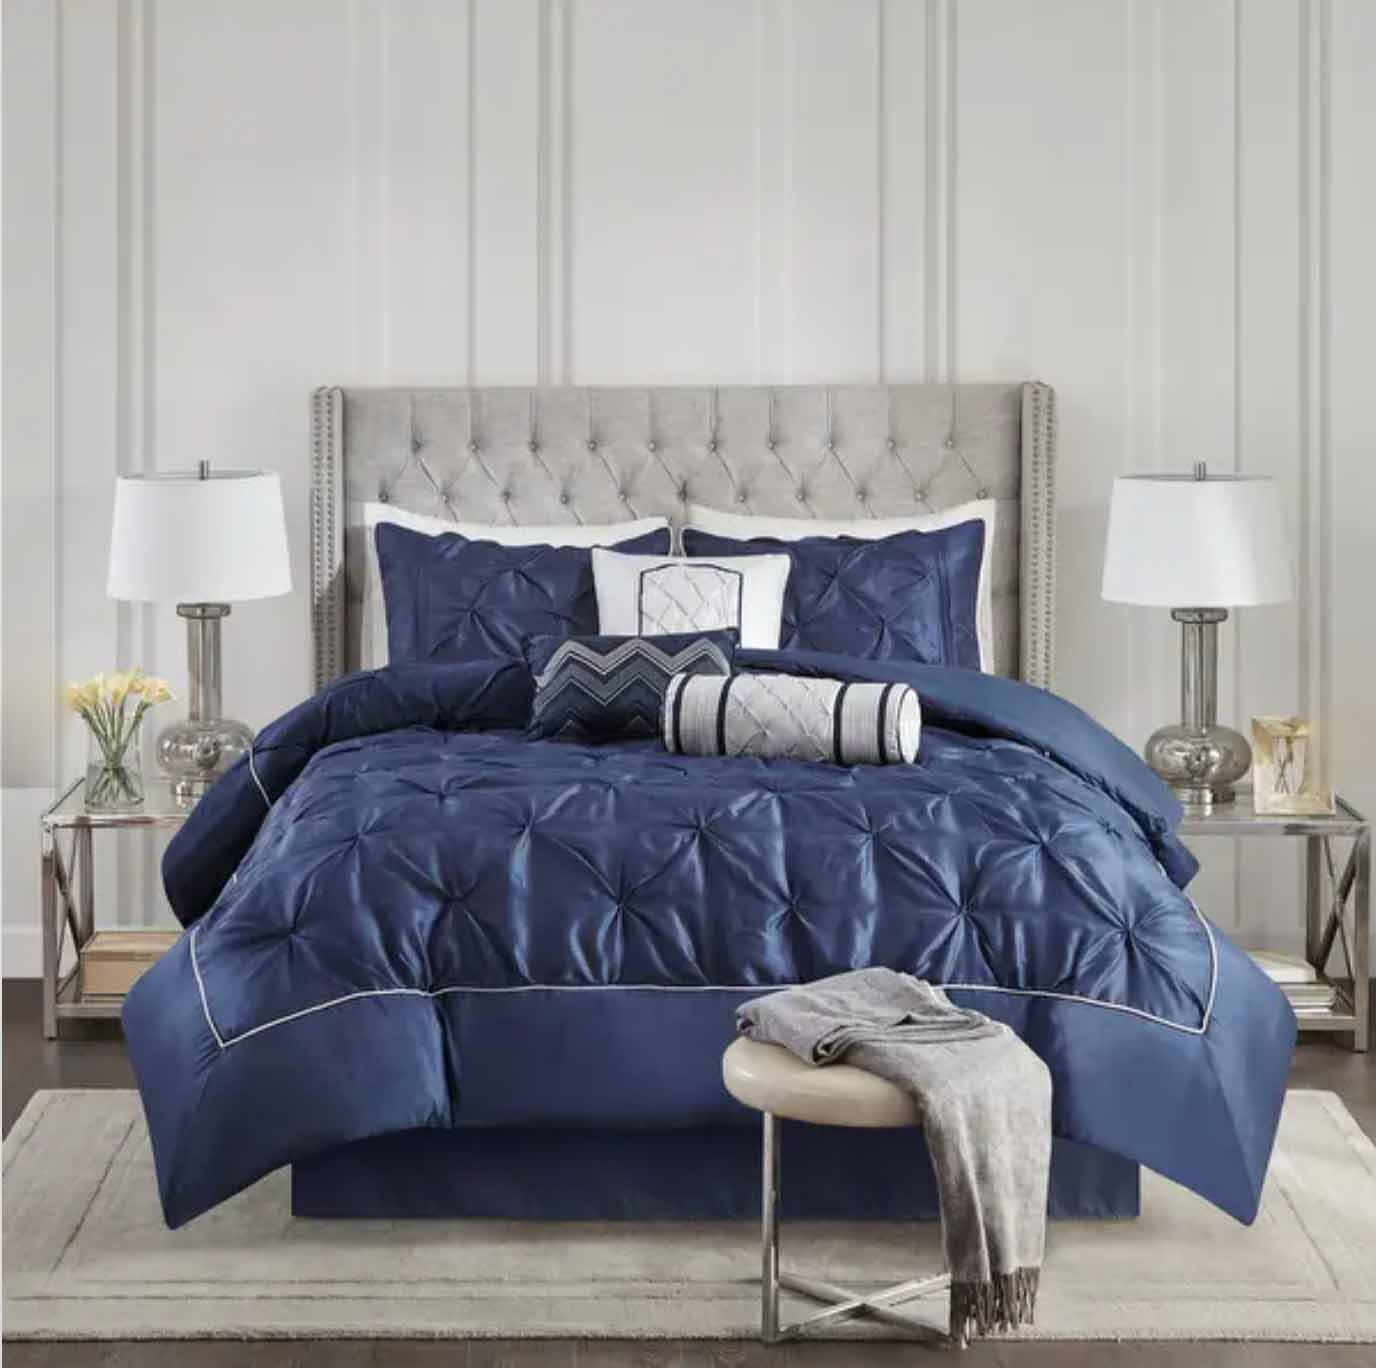 Dark blue bedding set in luxury room